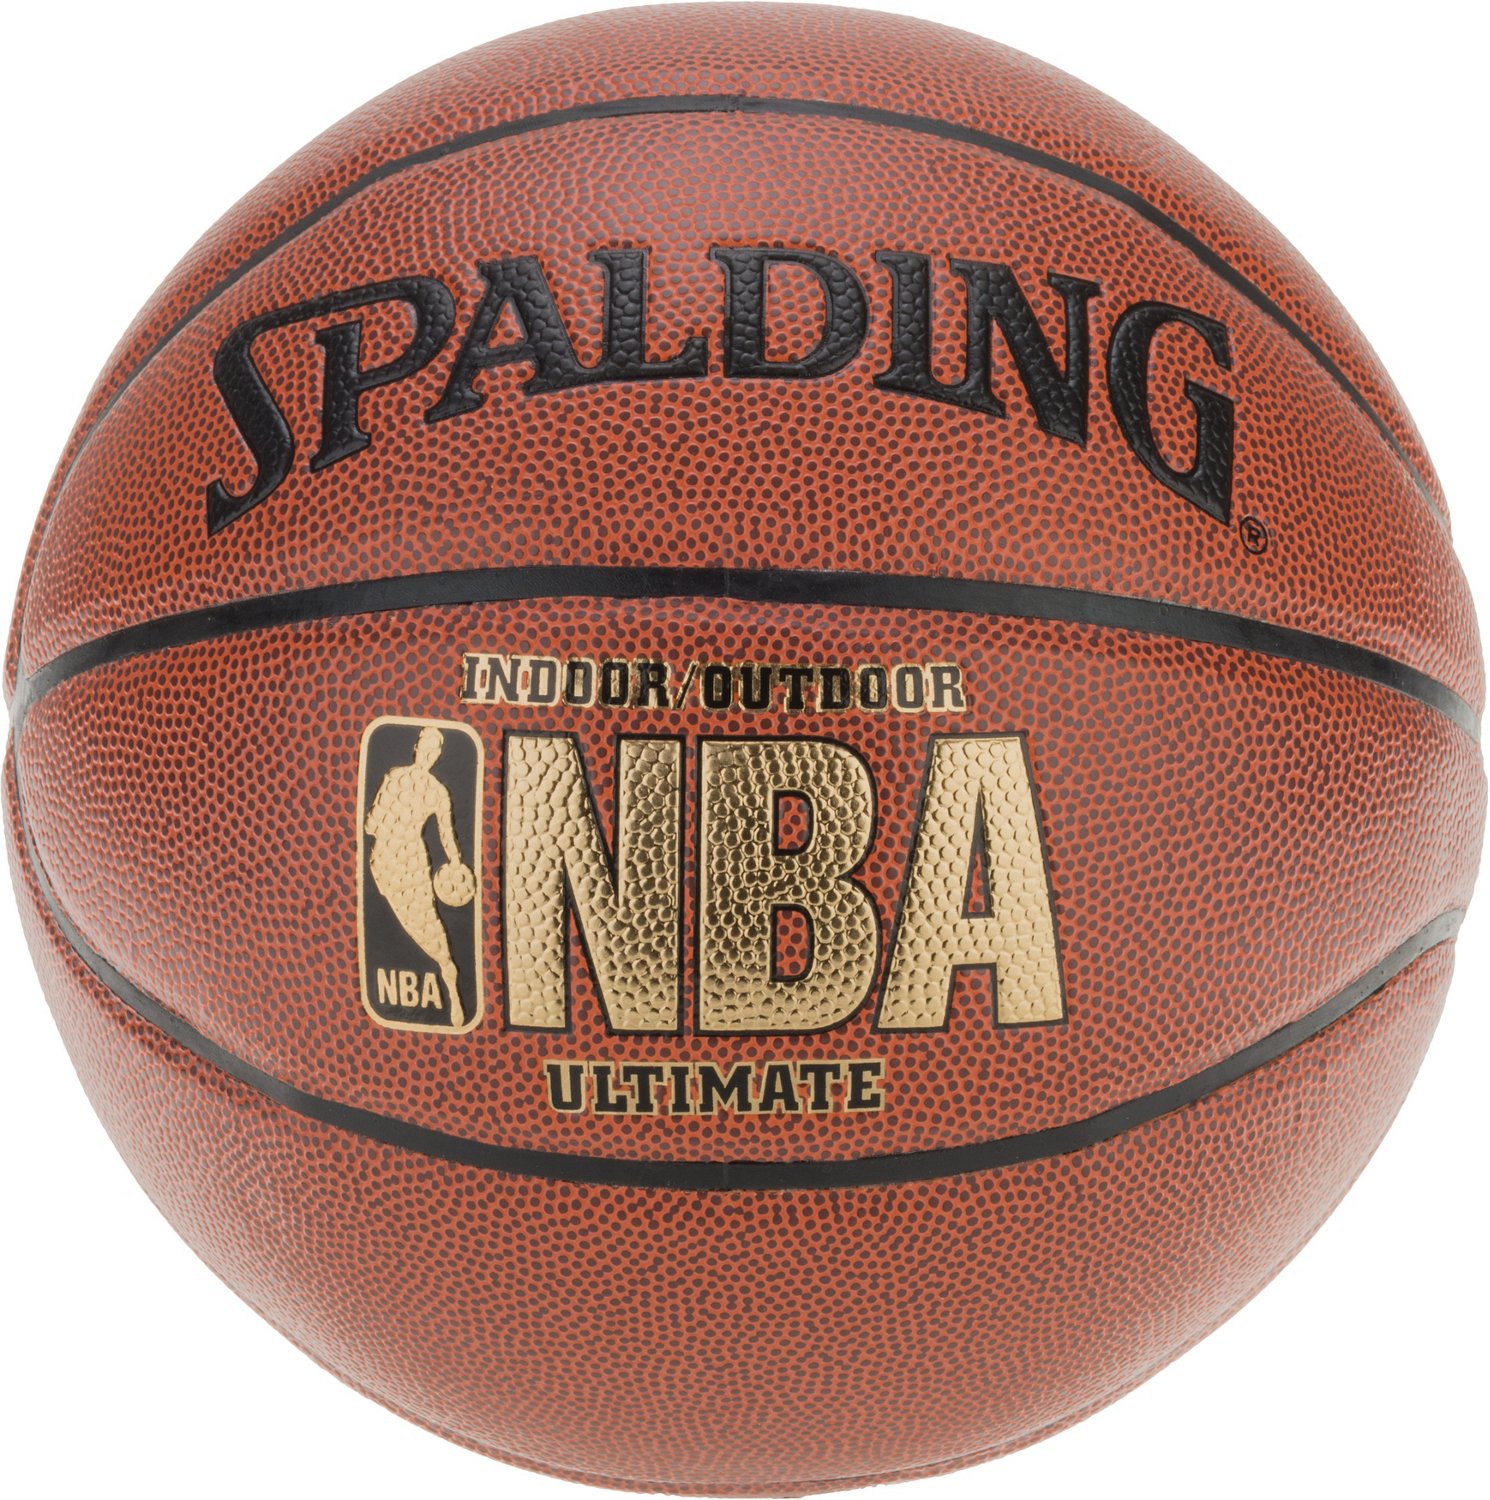 Spalding NBA Ultimate Basketball | Academy